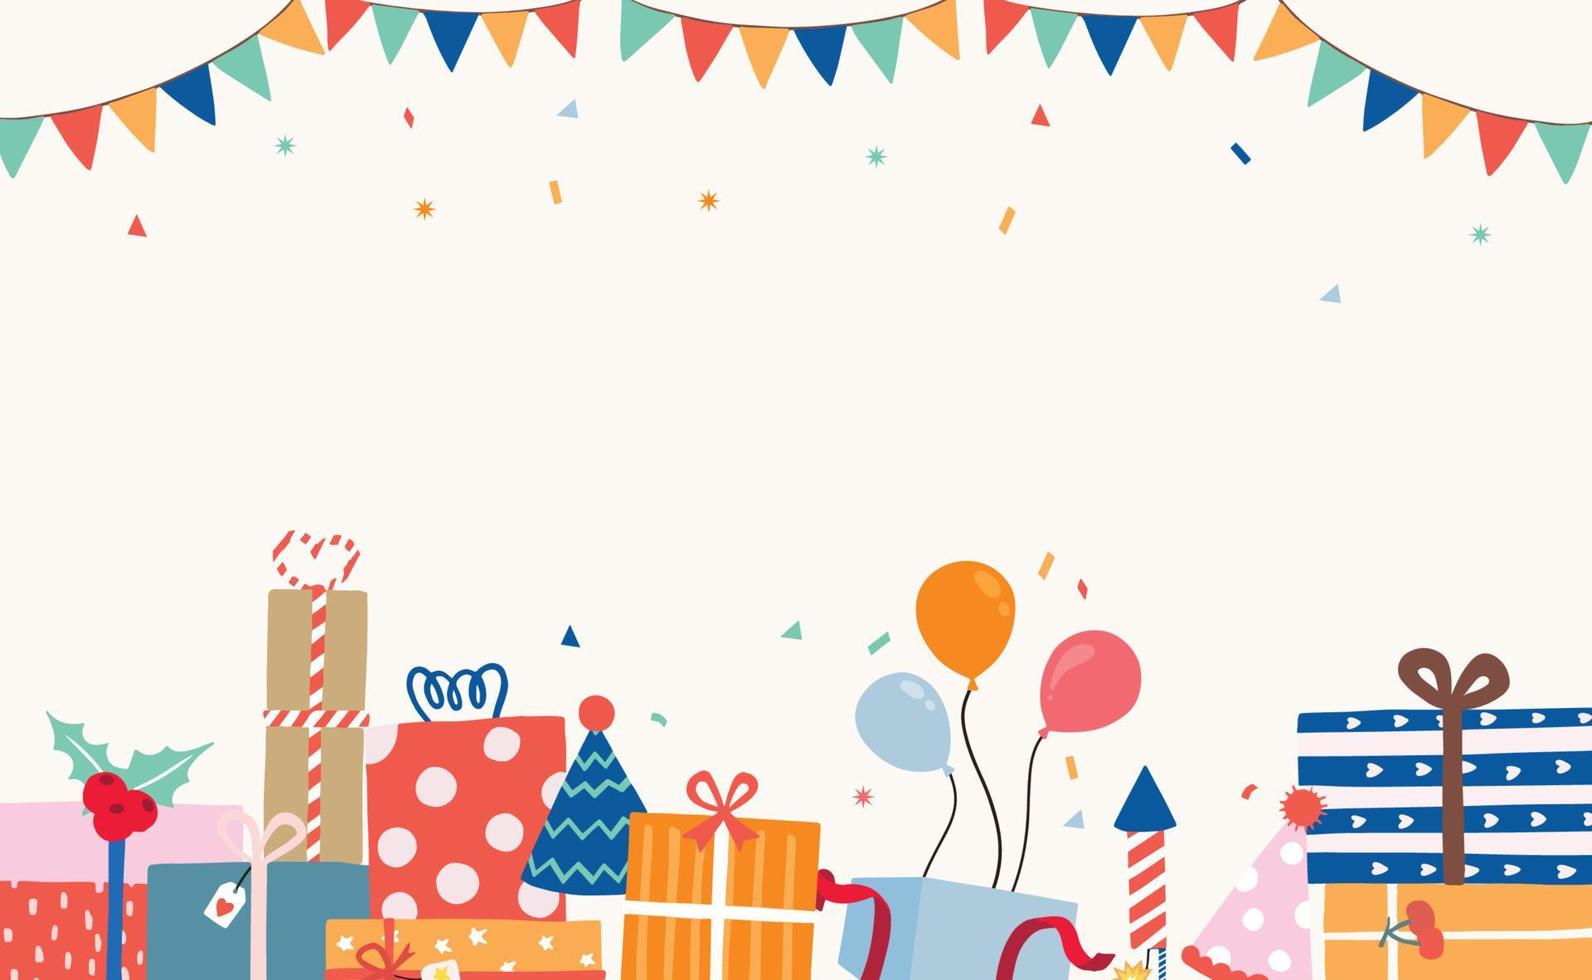 partijkaartcollectie met geschenkdoos, ballon, lint, confetti.vectorillustratie voor poster, postkaart, banner, dekking vector